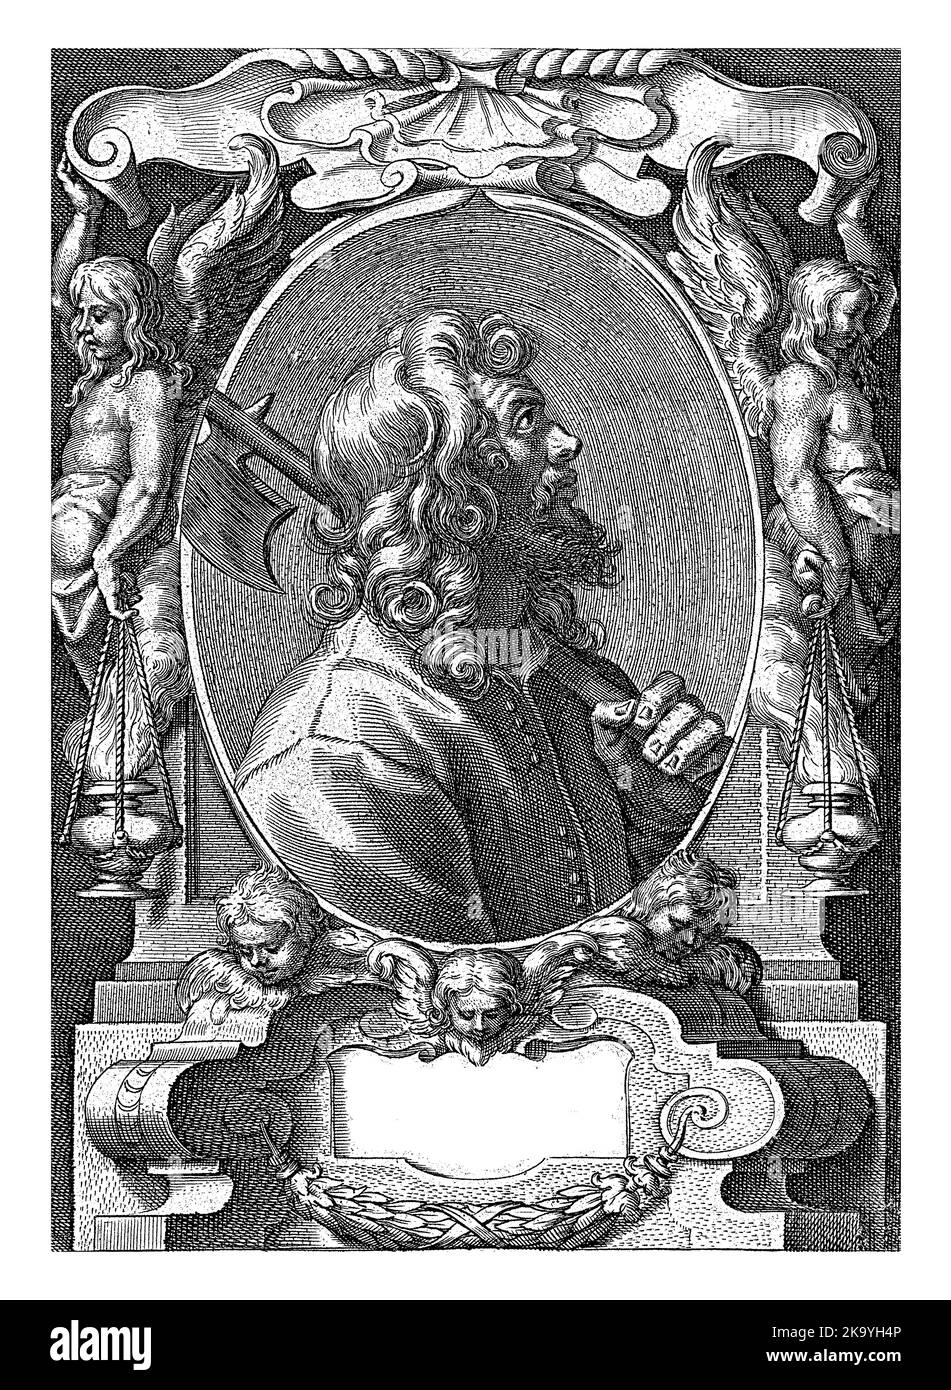 L'évangéliste Matthew avec halberd dans le cadre avec des ornements architecturaux, Jan-Baptist Barbé, d'après Theodporte van Loon, 1588 - 1648 Banque D'Images